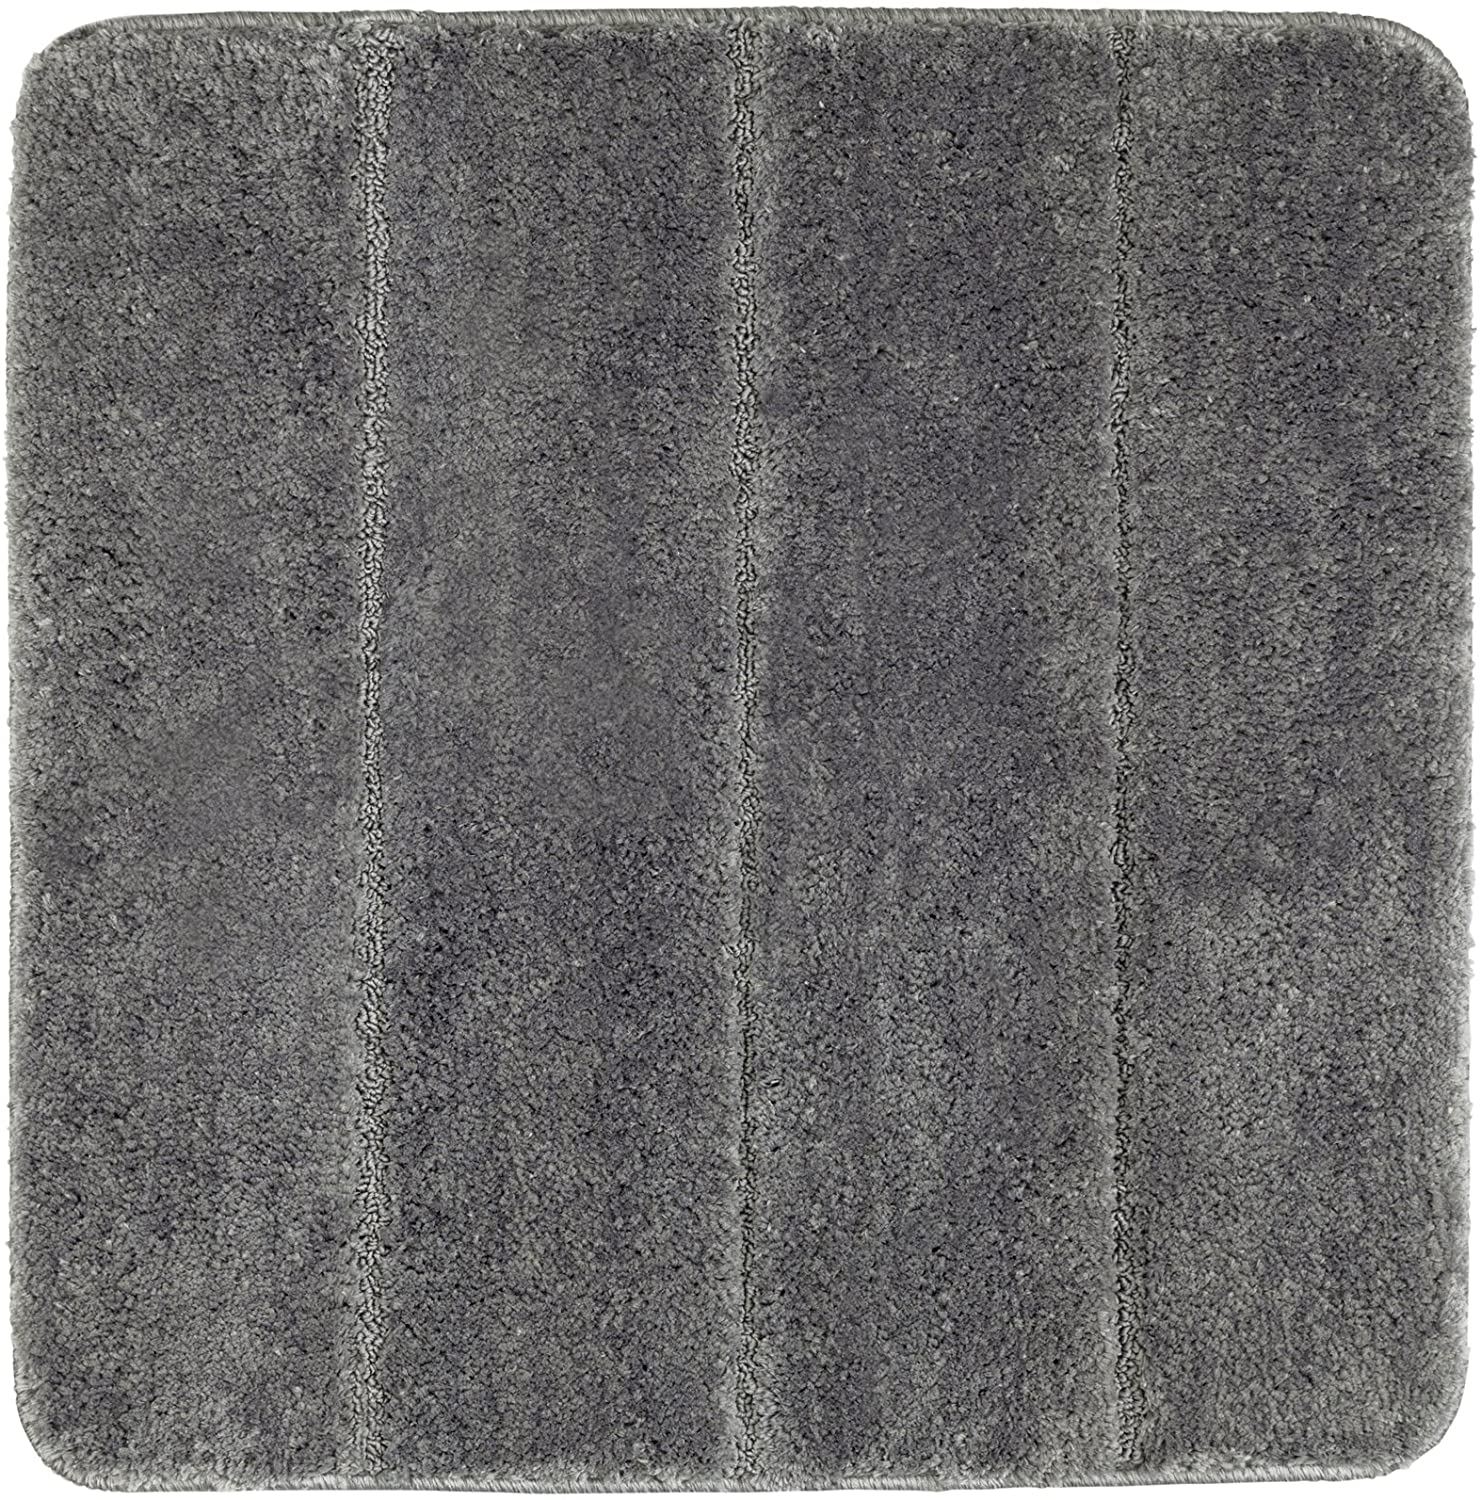 Badteppich Steps Mouse Grey, 55 x 65 cm - Badematte, rutschhemmend, außergewöhnlich weiche und dichte Qualität, Polyester, 55 x 65 cm, Grau